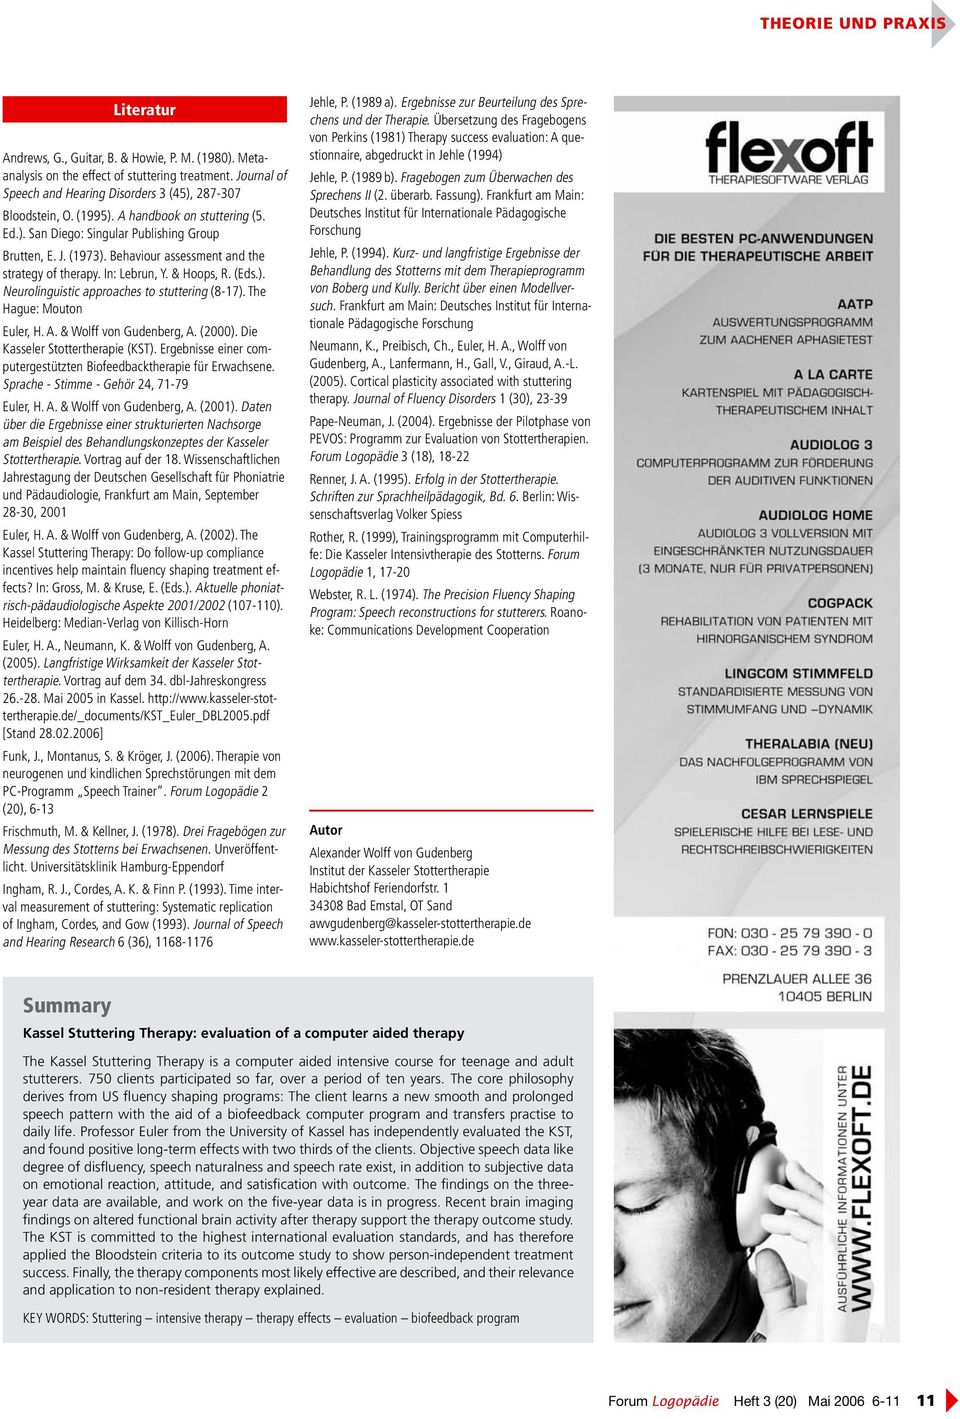 The Hague: Mouton Euler, H. A. & Wolff von Gudenberg, A. (2000). Die Kasseler Stottertherapie (KST). Ergebnisse einer computergestützten Biofeedbacktherapie für Erwachsene.